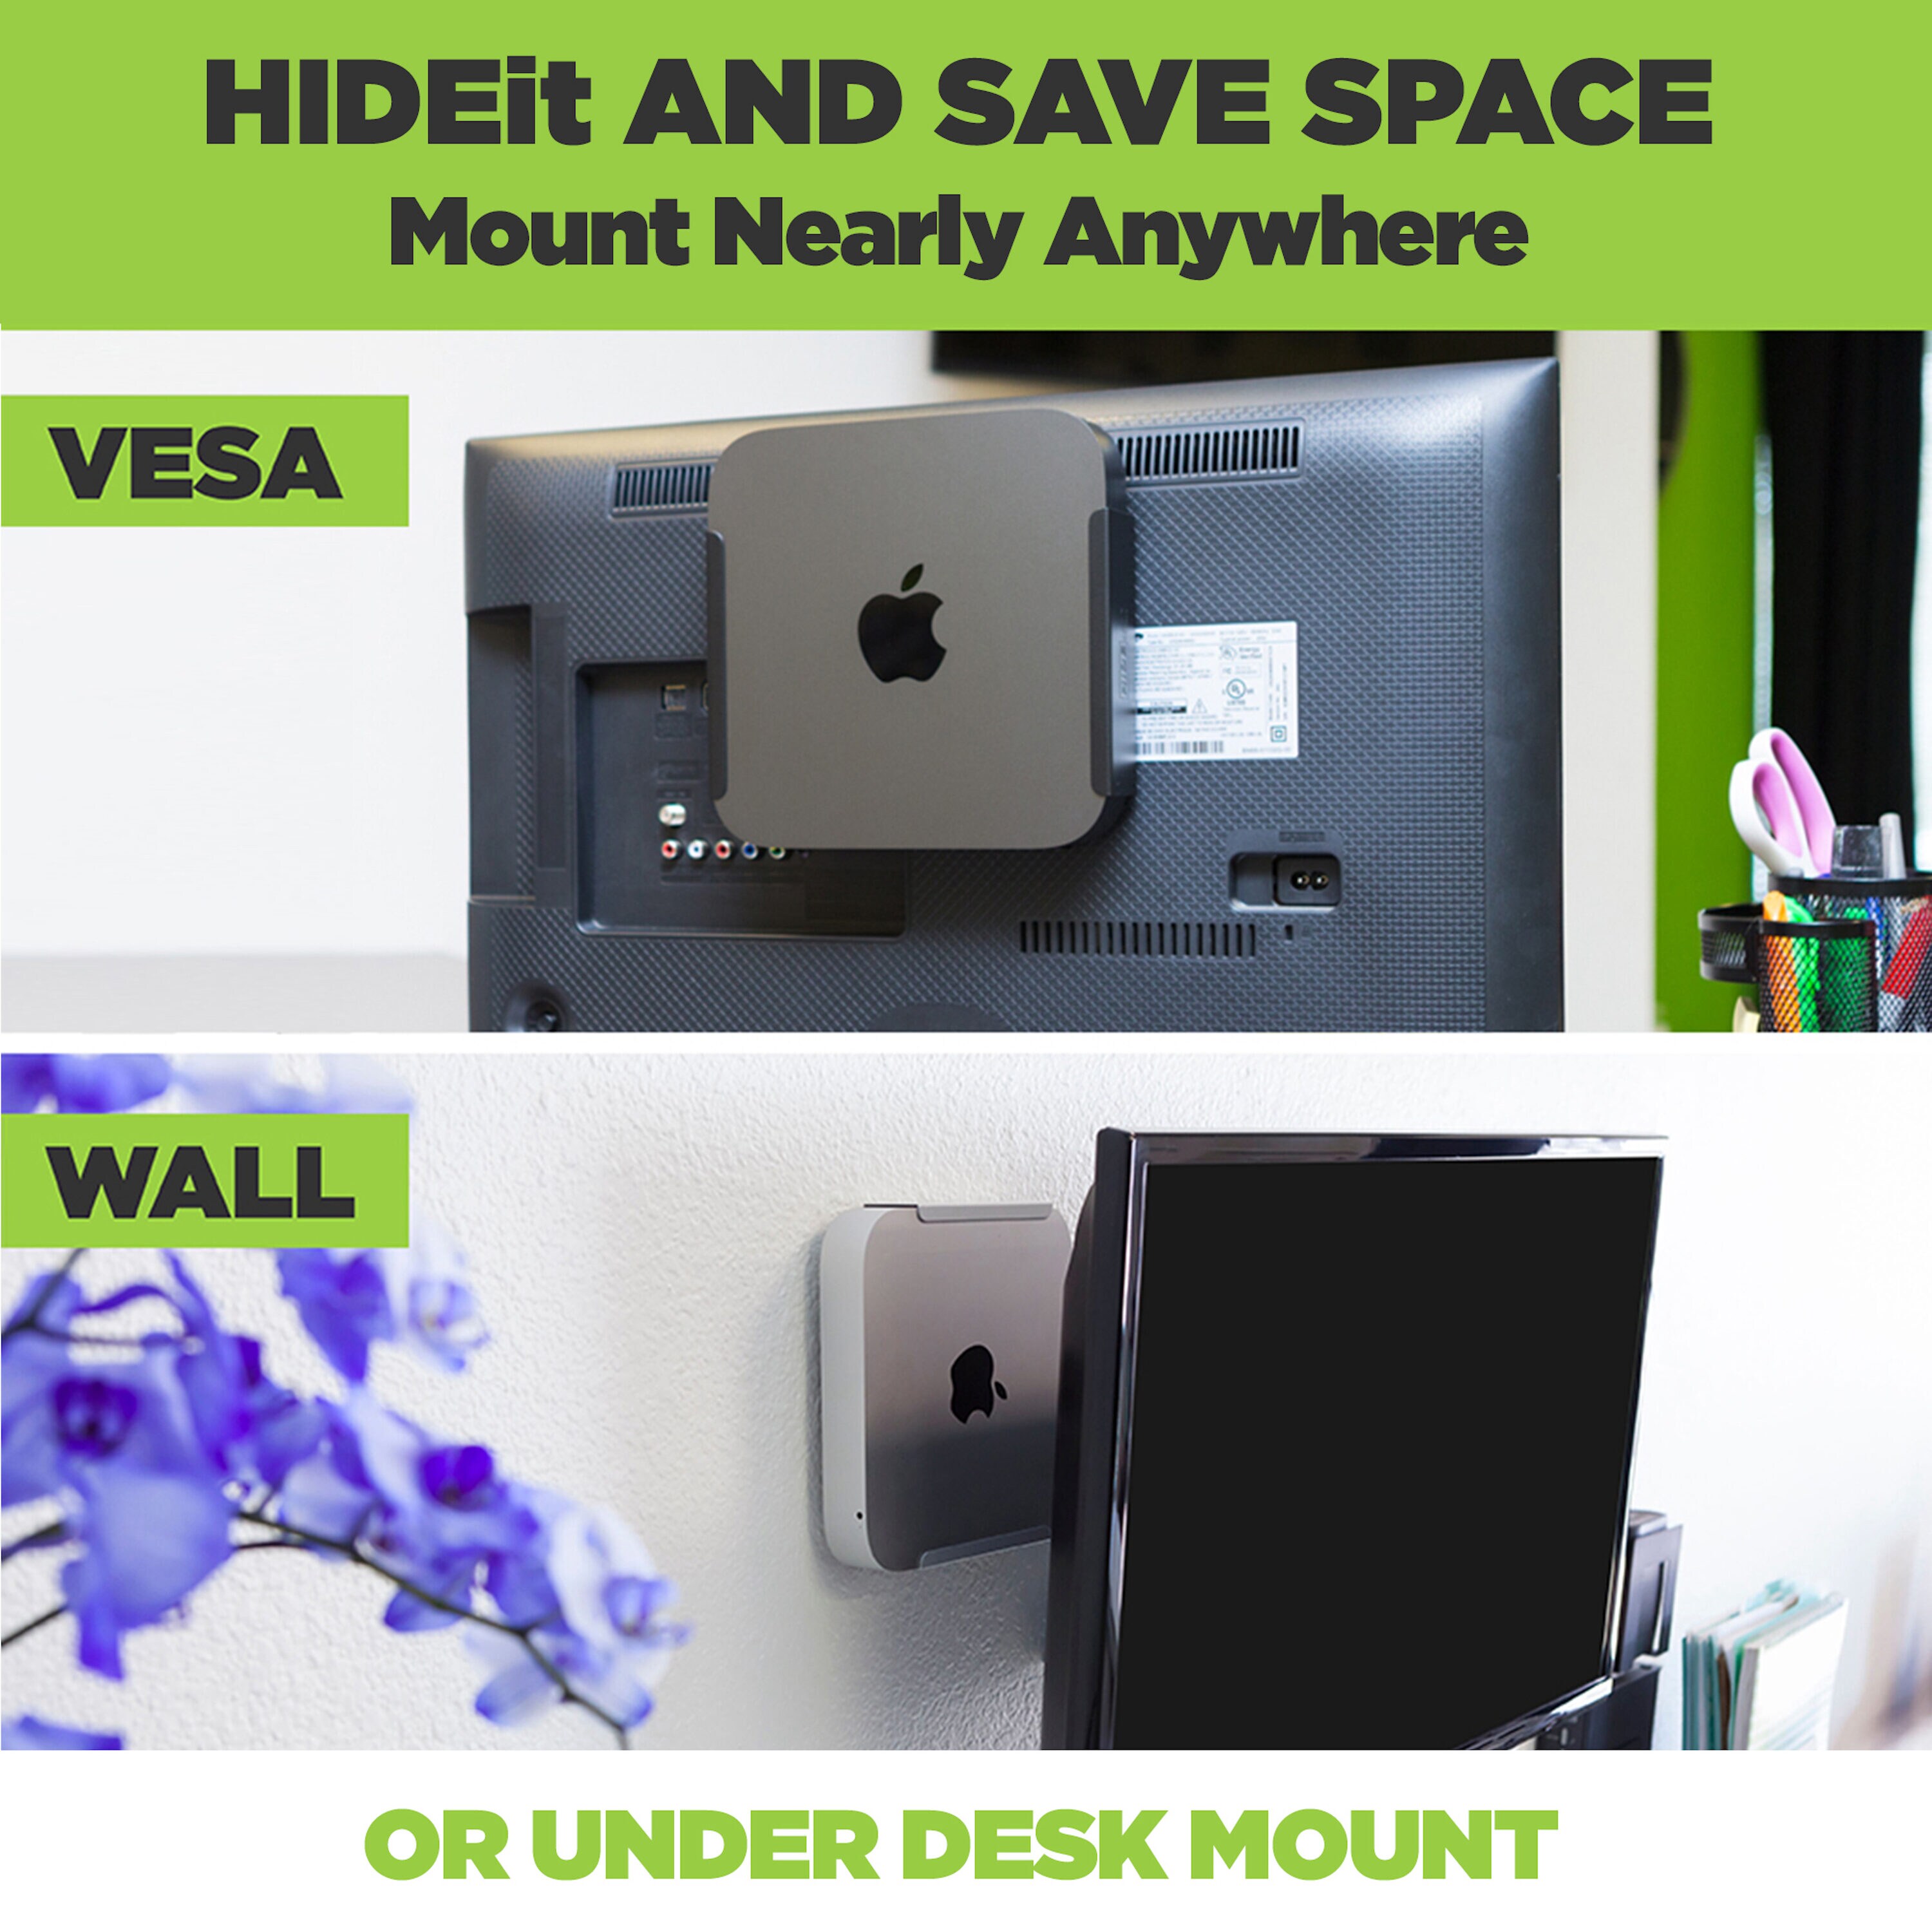 VESA Mount Designed for the Mac Mini